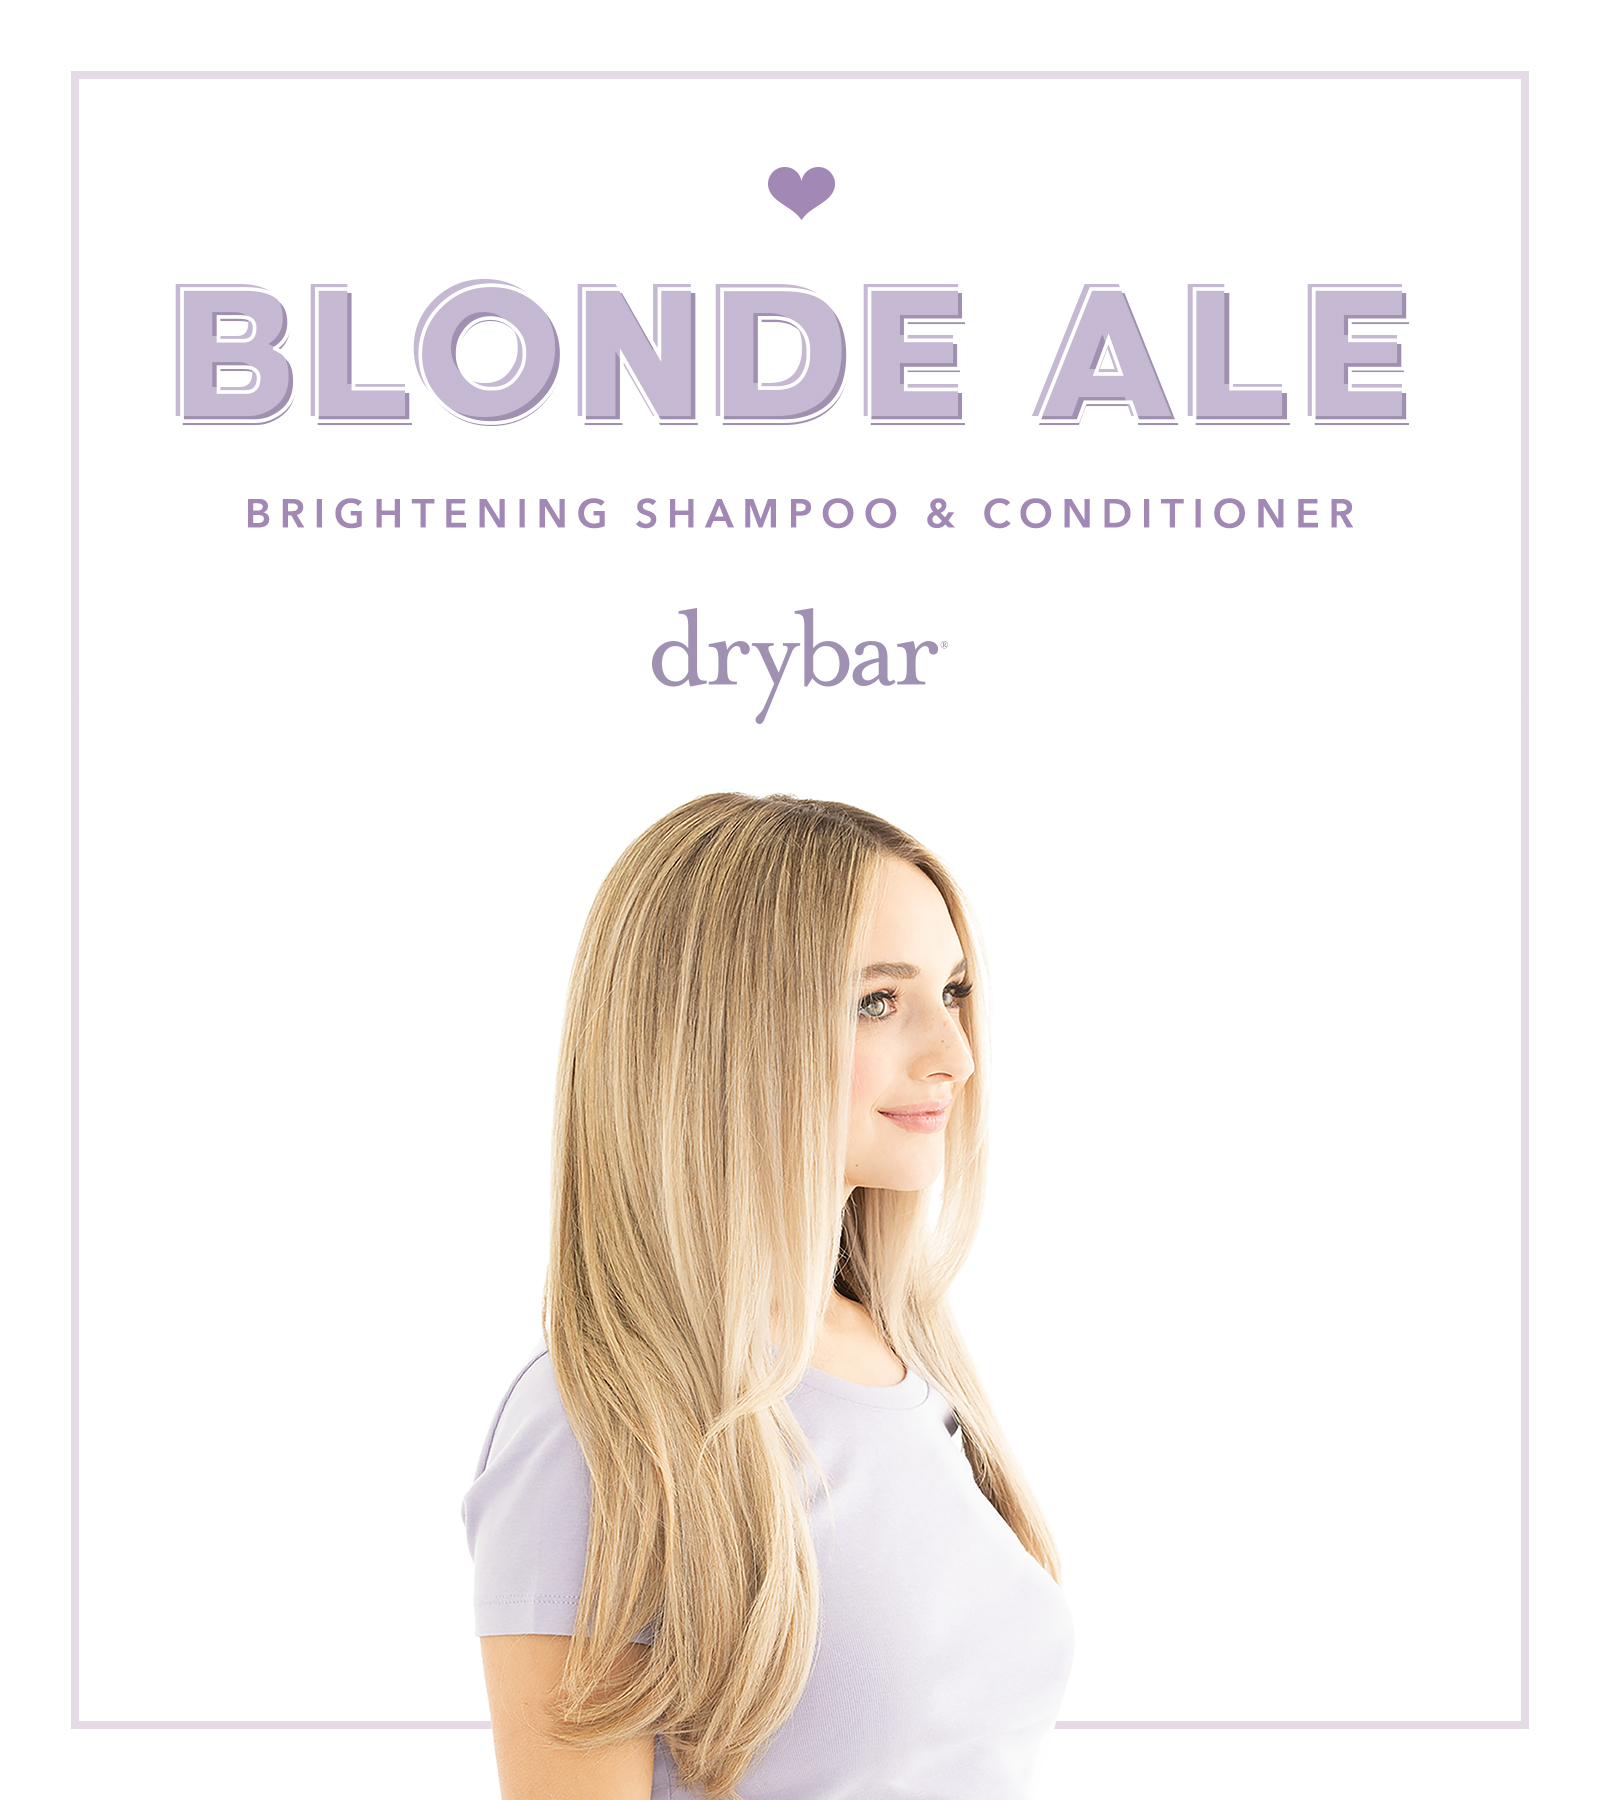 Blonde Ale Brightening Shampoo & Conditioner Drybar